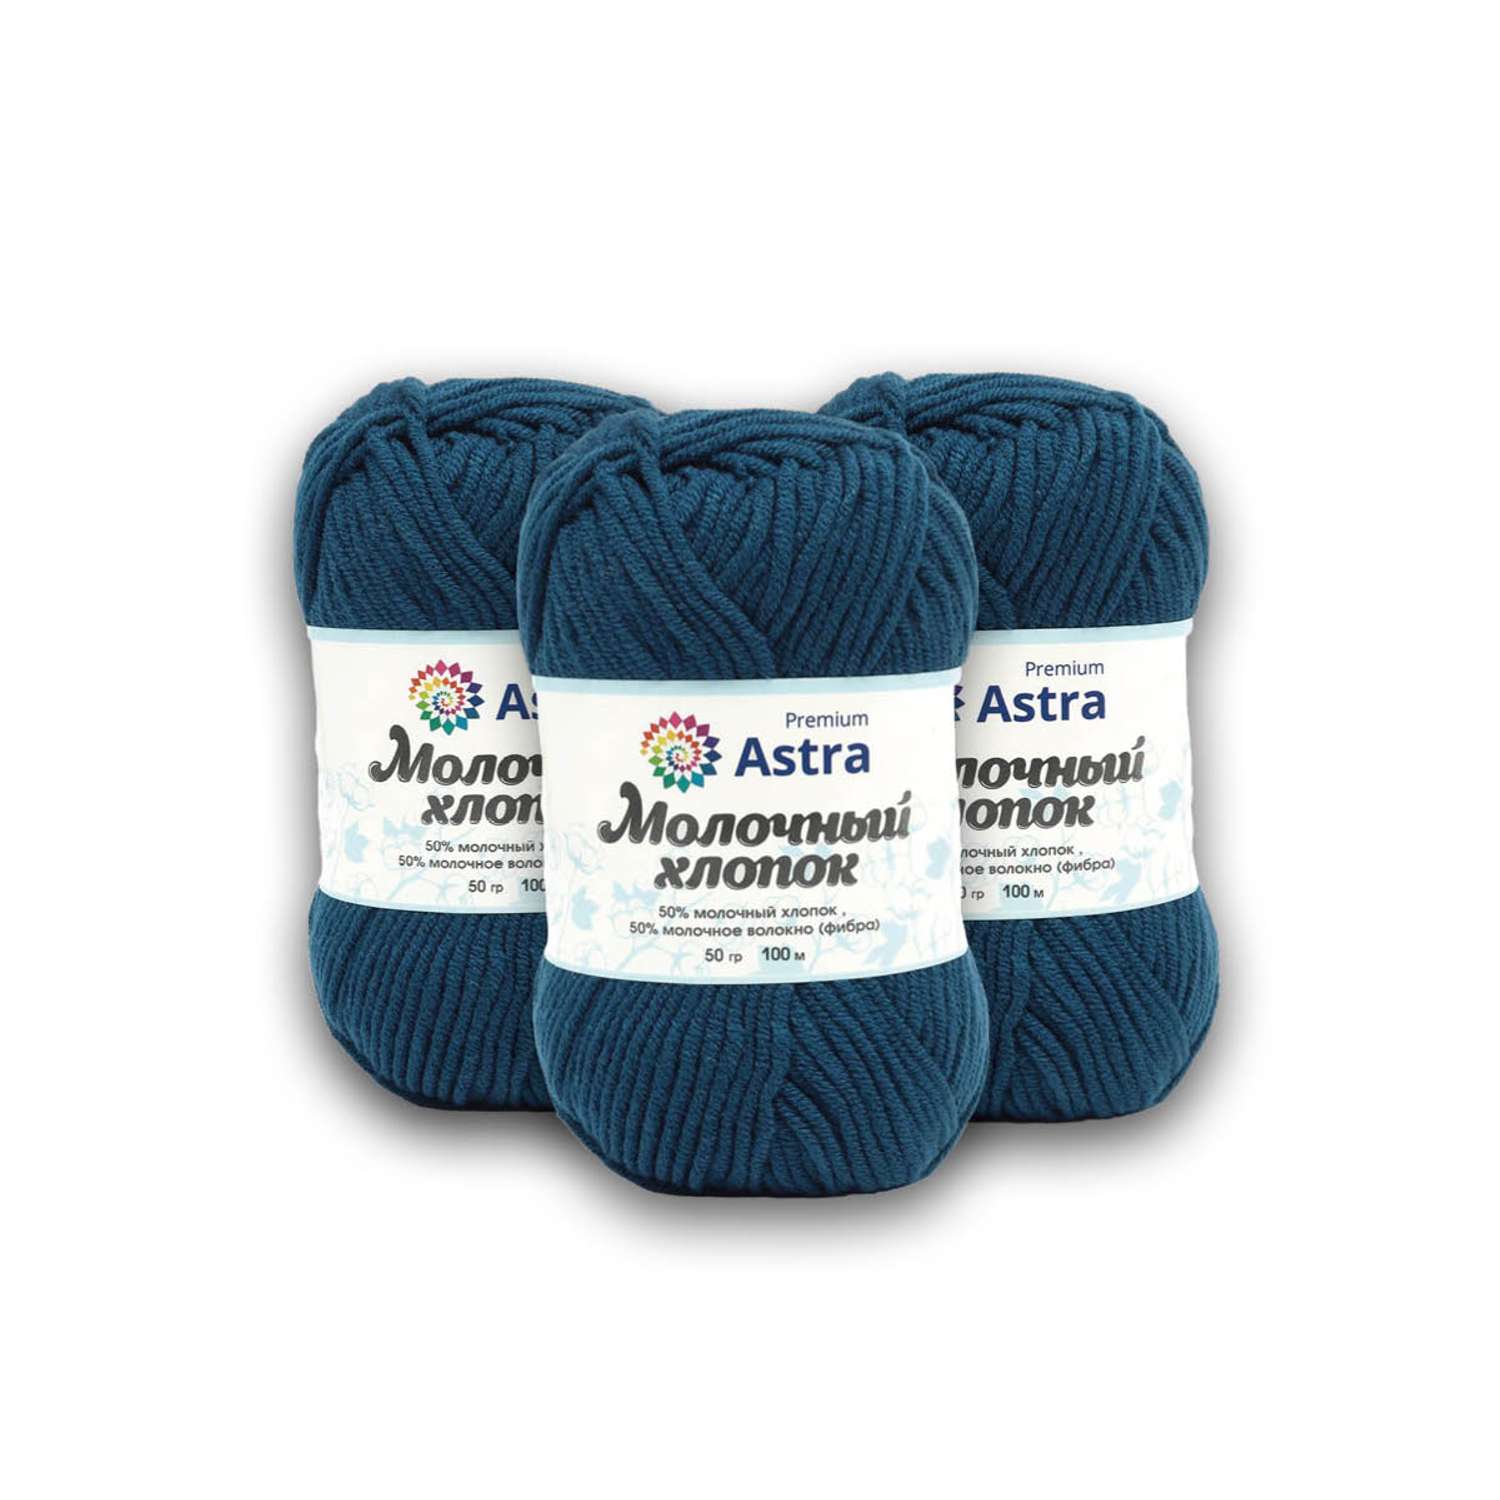 Пряжа для вязания Astra Premium milk cotton хлопок акрил 50 гр 100 м 60 синий джинсовый 3 мотка - фото 10